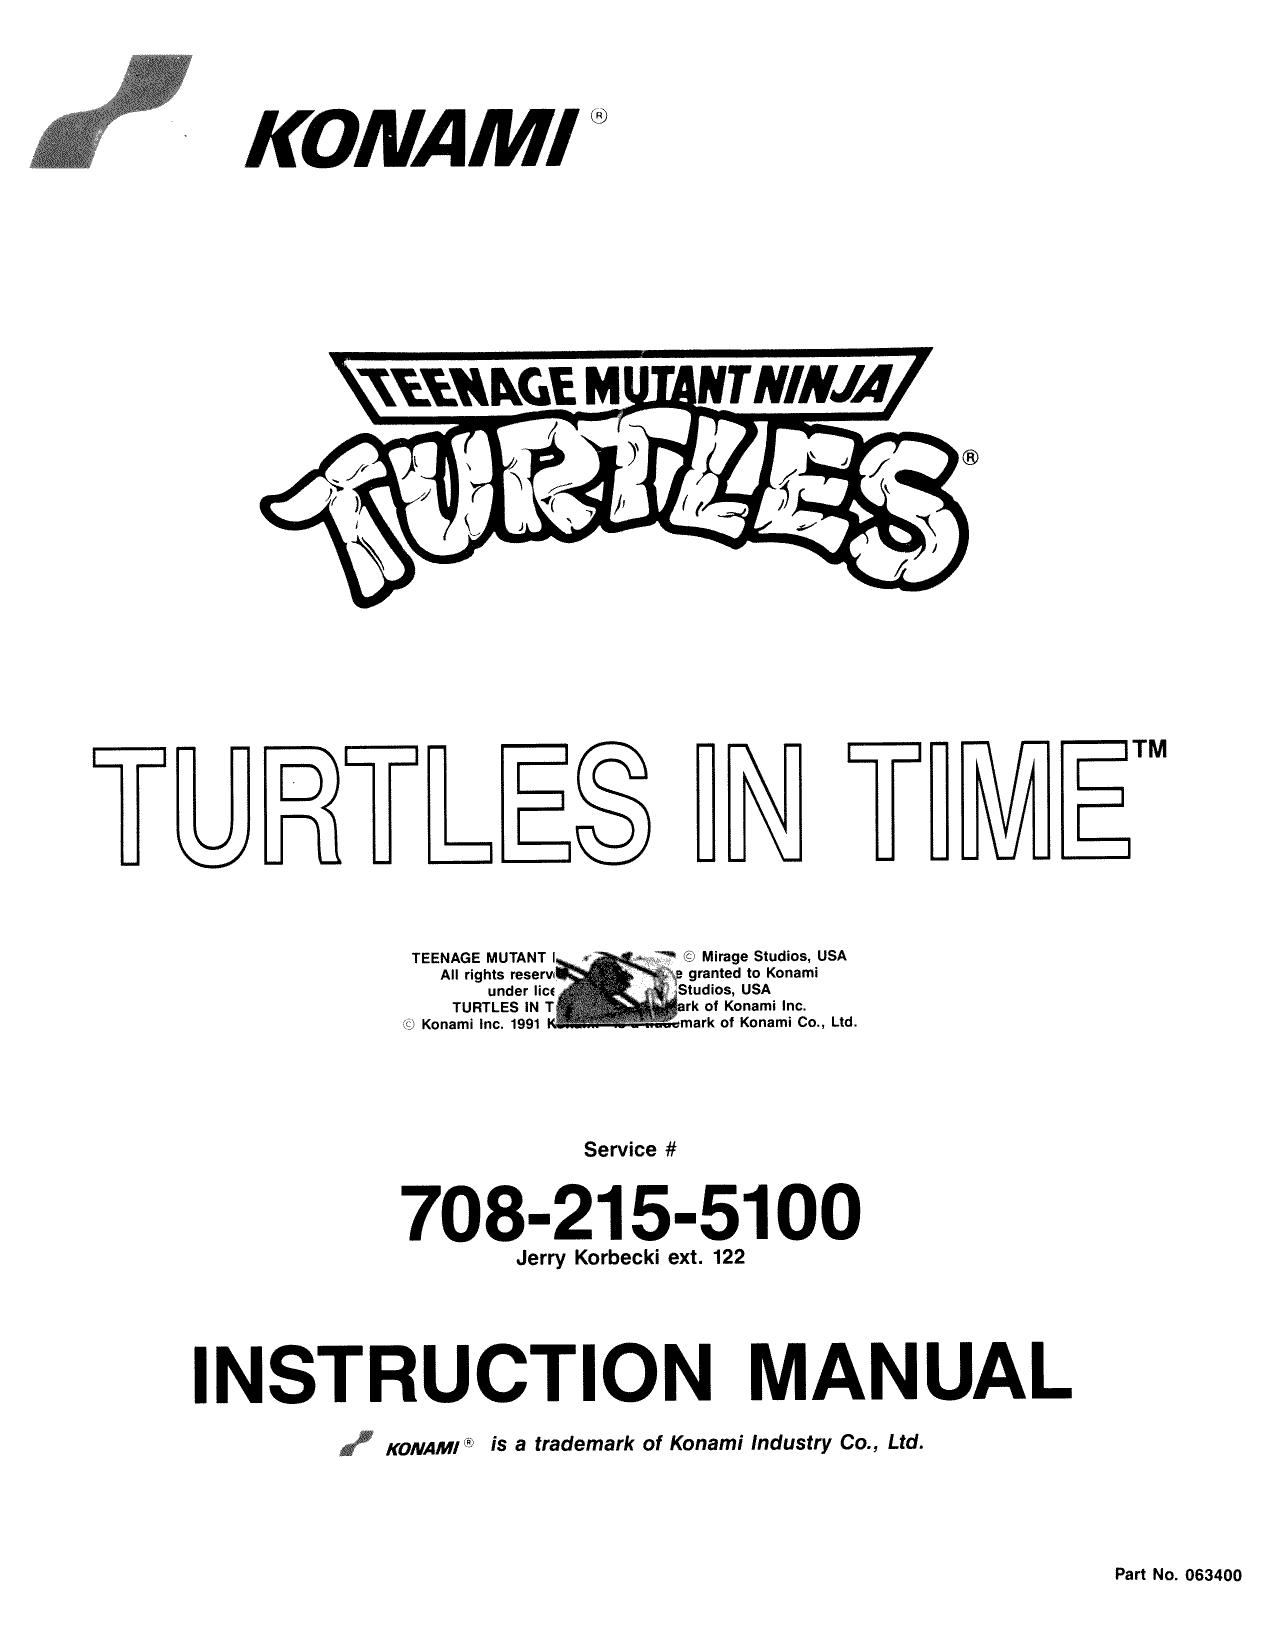 TurtlesinTime Manual